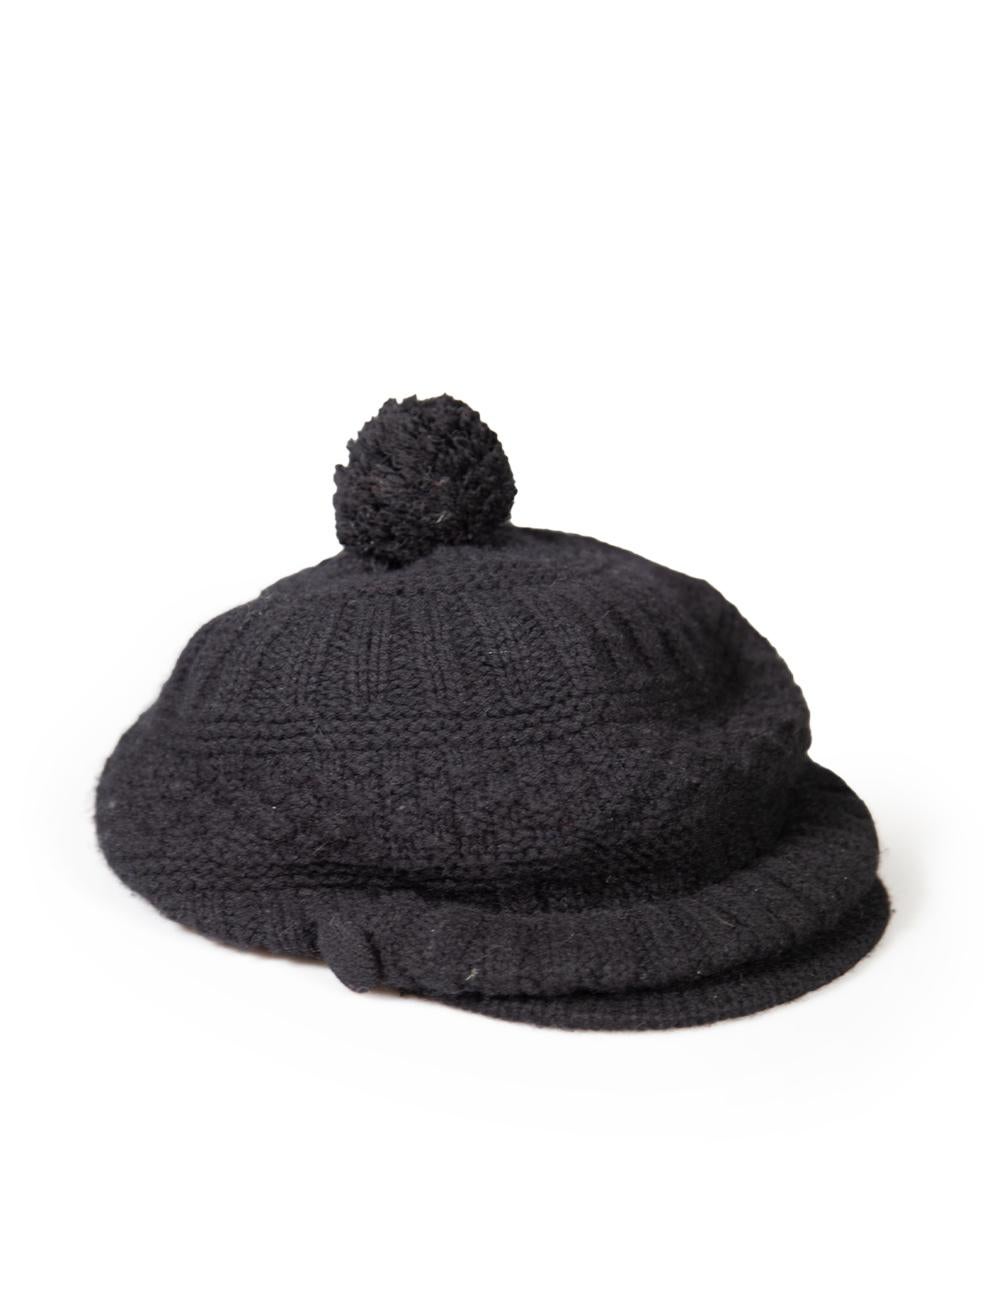 CONDIT ist sehr gut. Der Hut weist nur minimale Abnutzung auf. Minimale Abnutzungserscheinungen und leichte Pillingbildung auf diesem gebrauchten Yohji Yamamoto Designer-Wiederverkaufsartikel.
 
 
 
 Einzelheiten
 
 
 Schwarz
 
 Wolle
 
